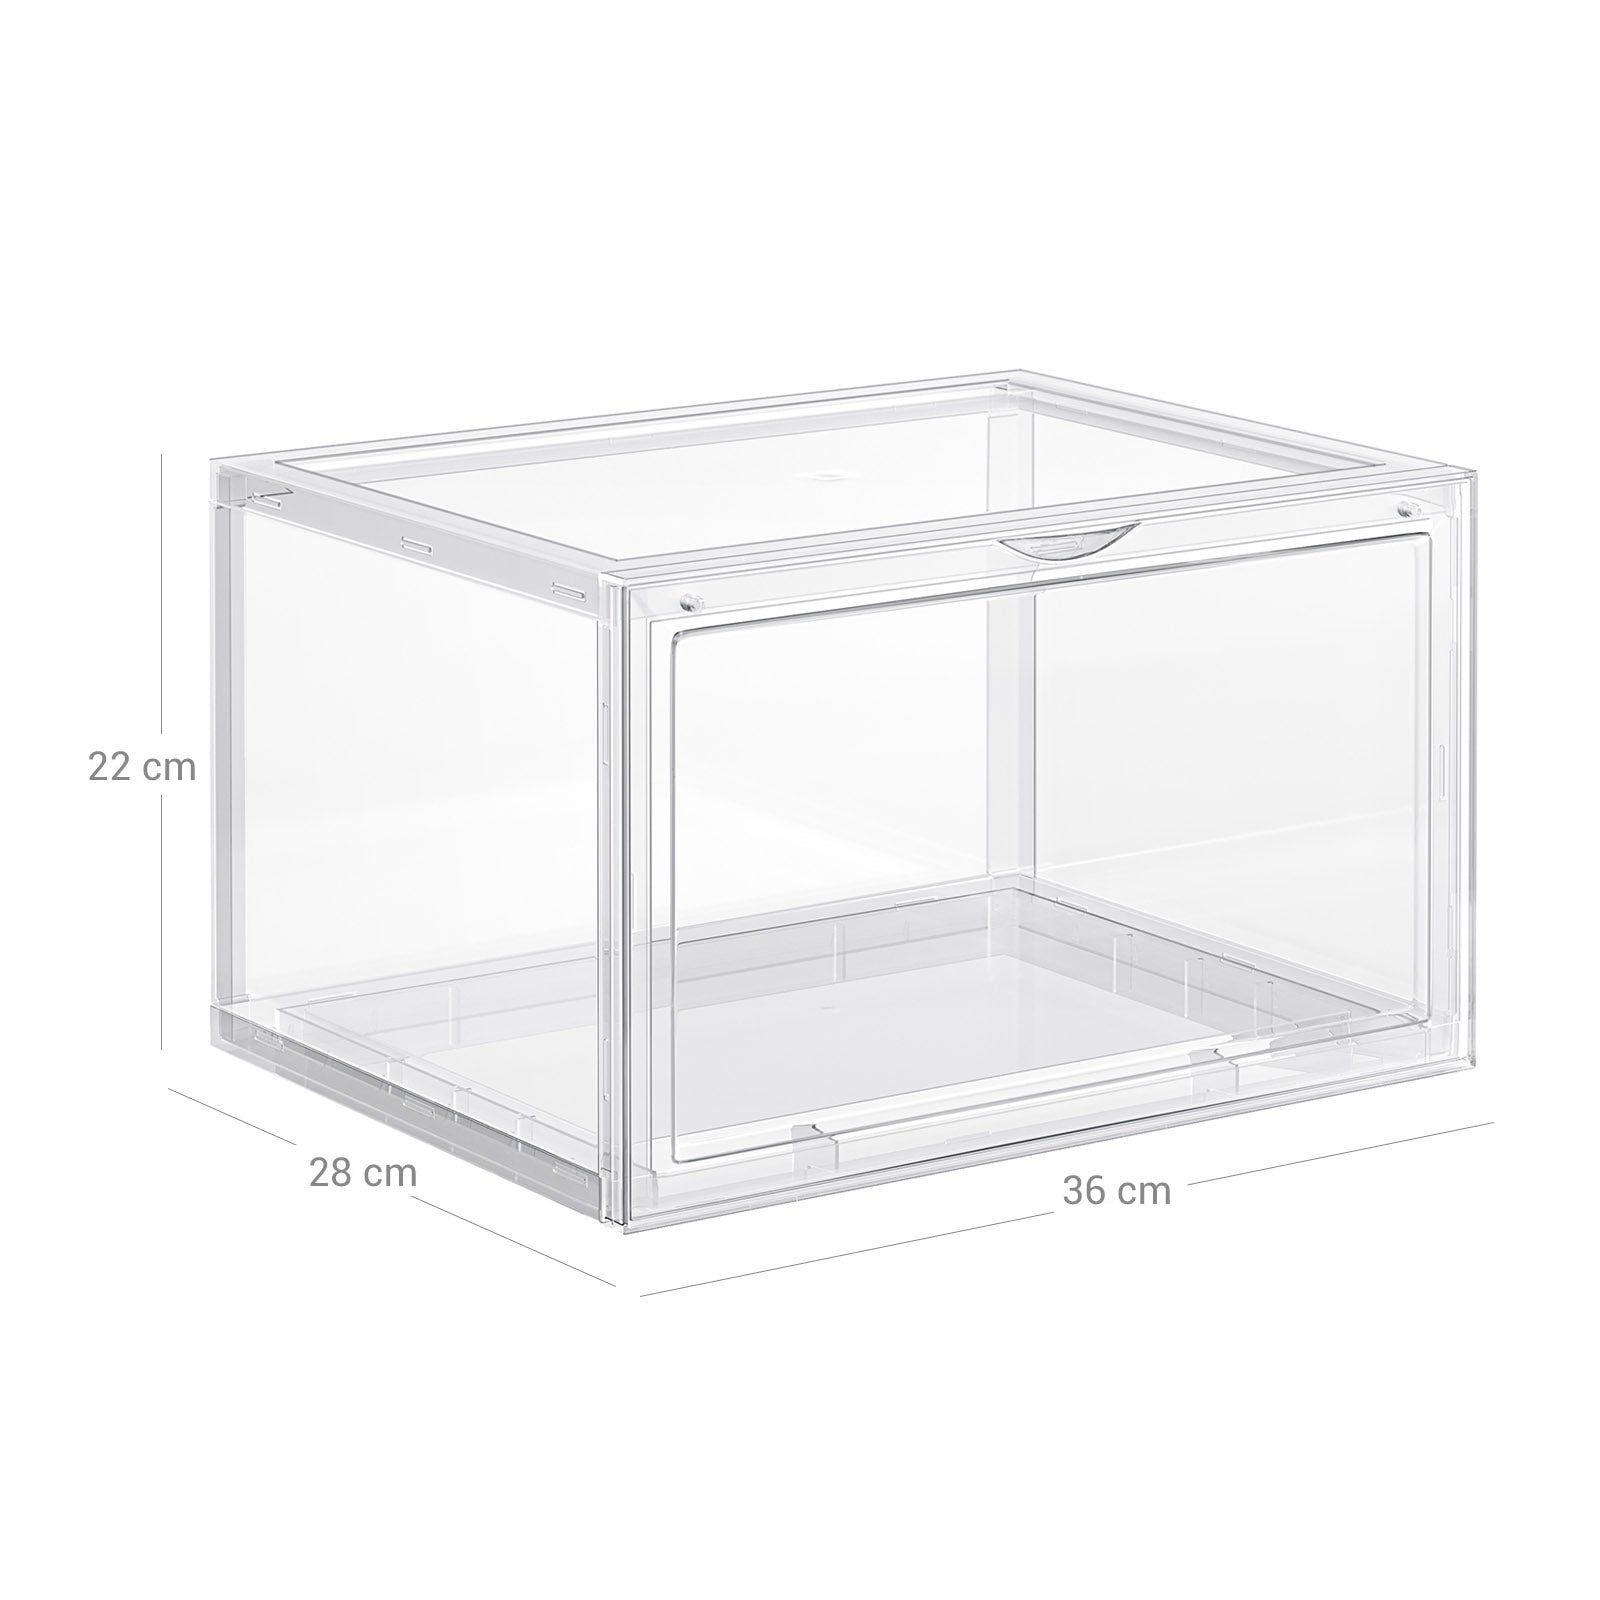 6er-Set Schuhbox Schuhorganizer 36 x 28 x 22 cm Weiß-Transparent